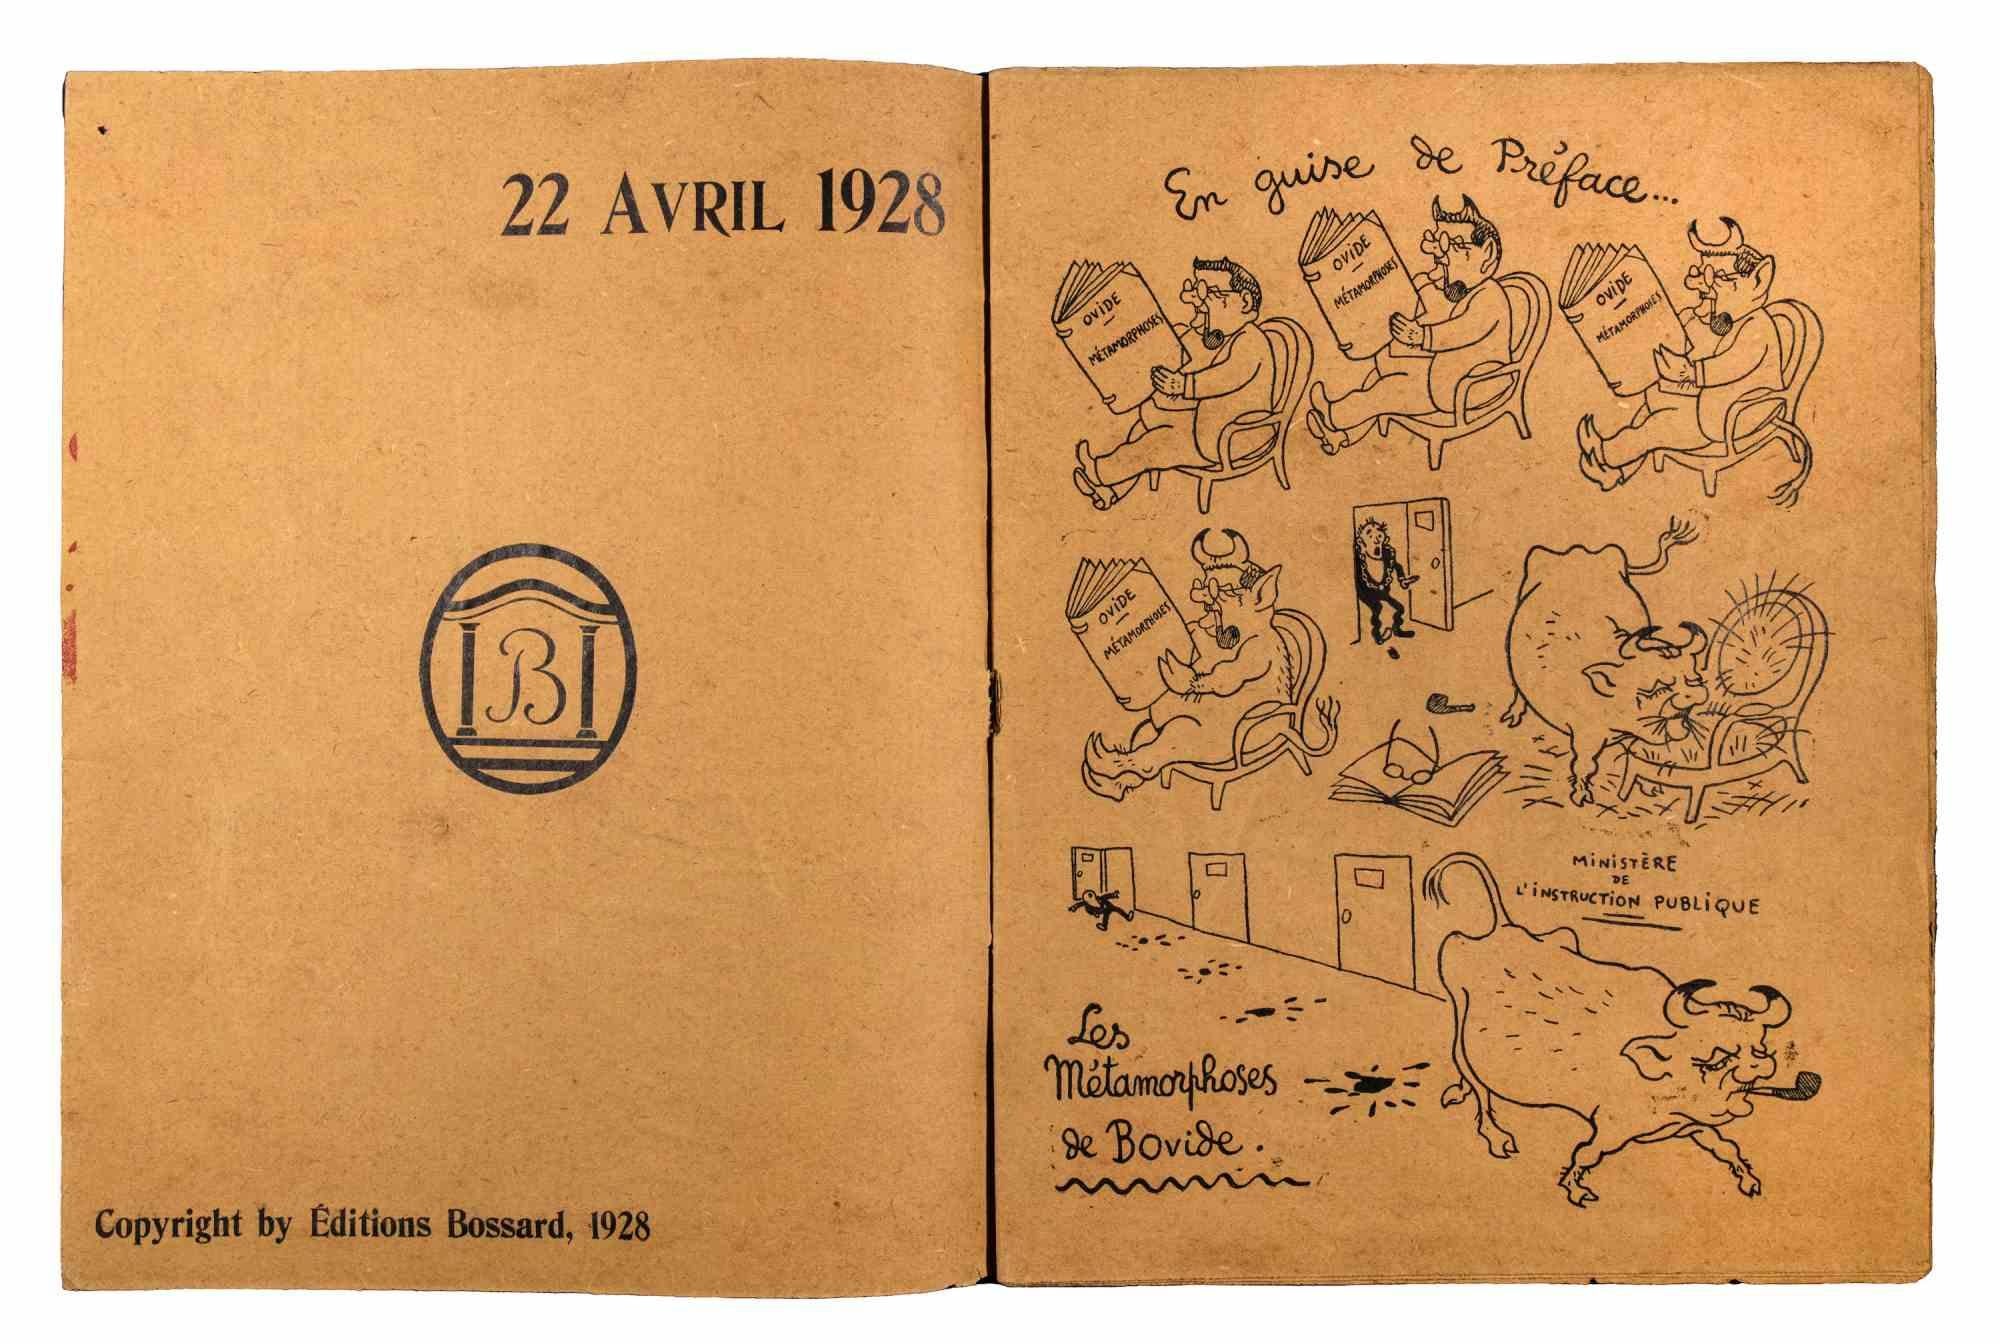 L'Abattoir Les Cartellistes - Illustriertes Buch von Jean-Jacques C. Penns - 1928 (Moderne), Print, von Jean-Jacques Charles Pennès